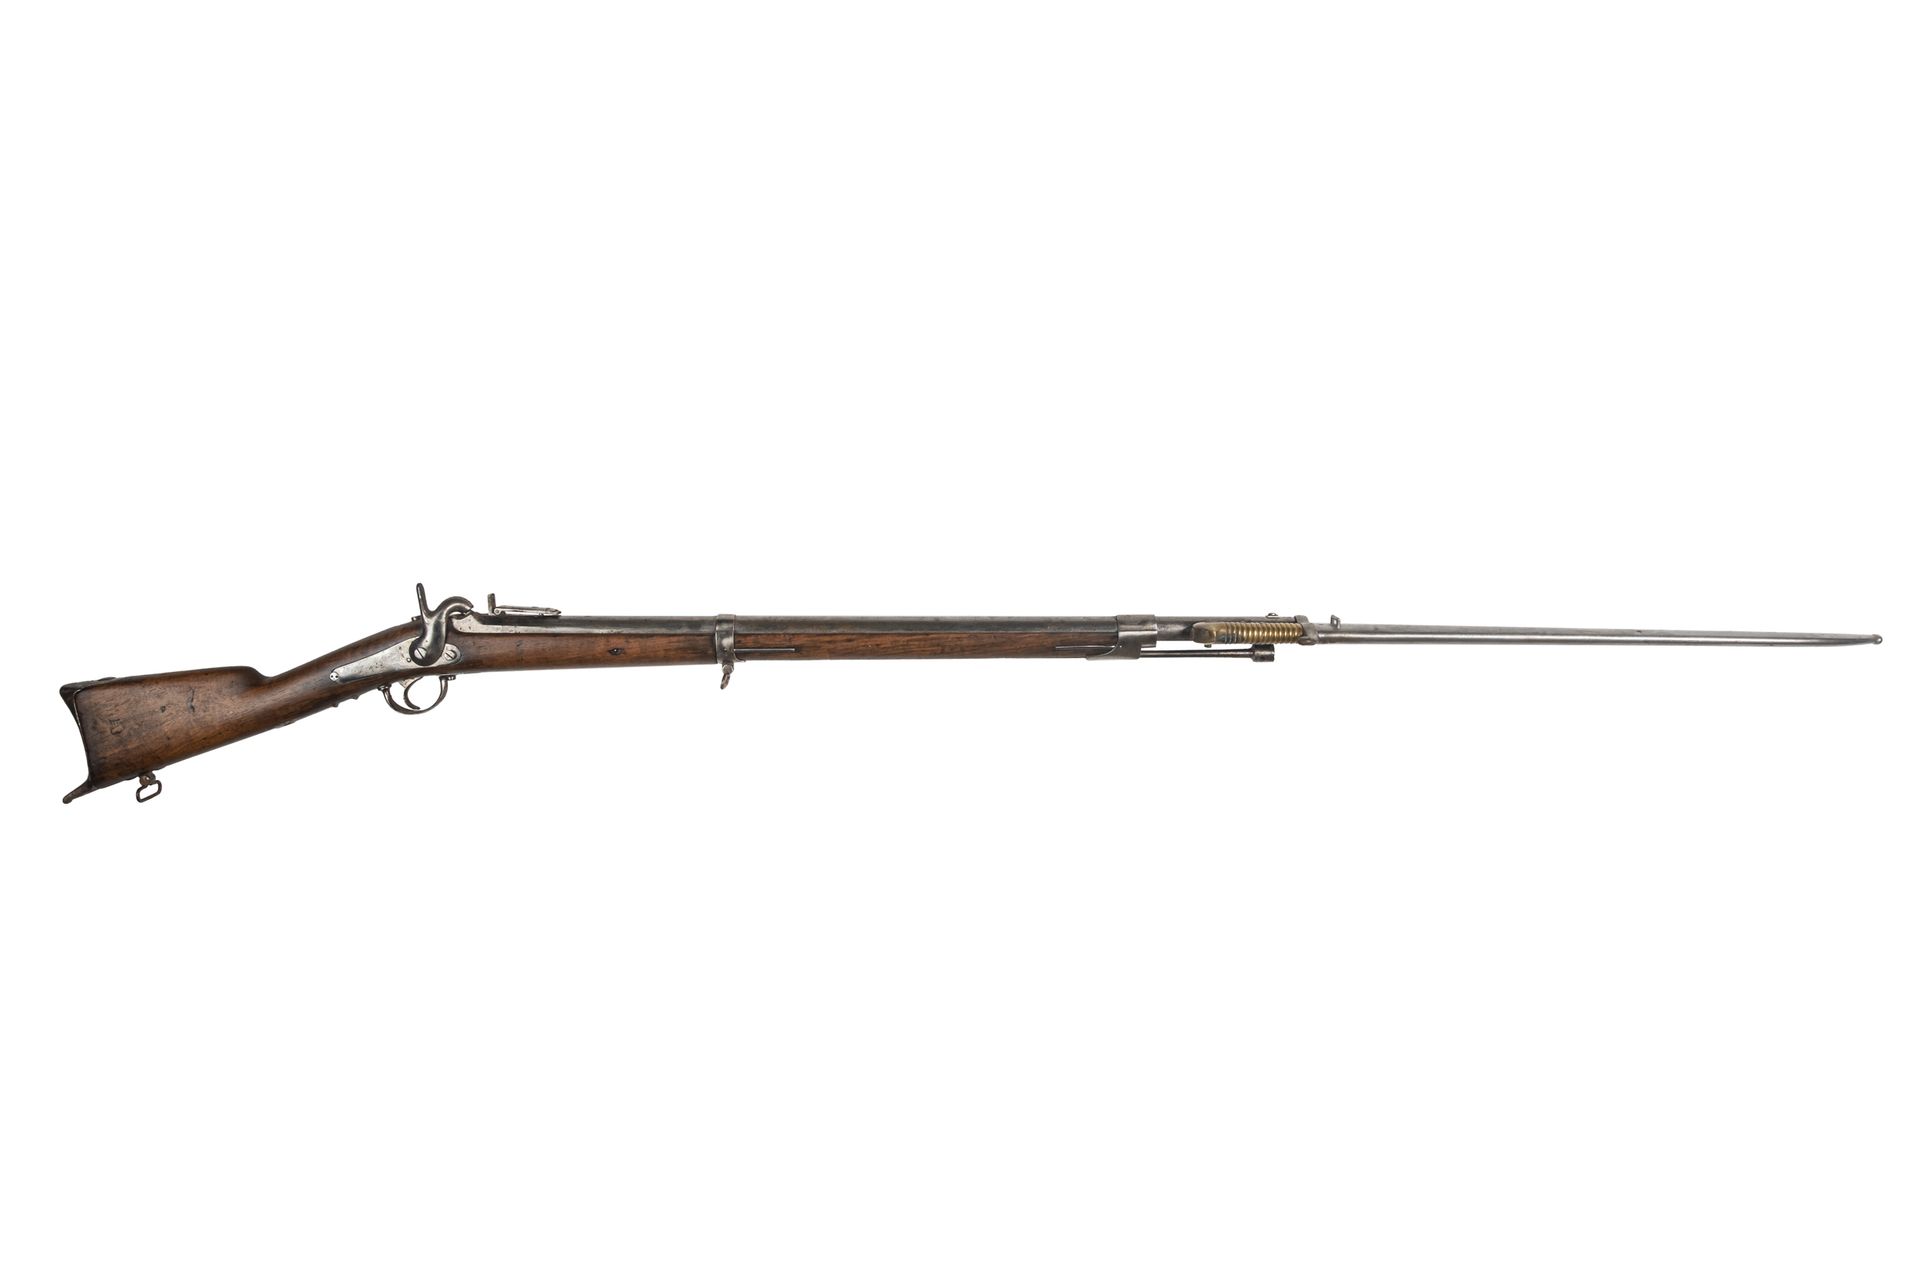 Null Fusil de terraplén con percusión modelo 1842

Fuerte cañón estriado, con ra&hellip;